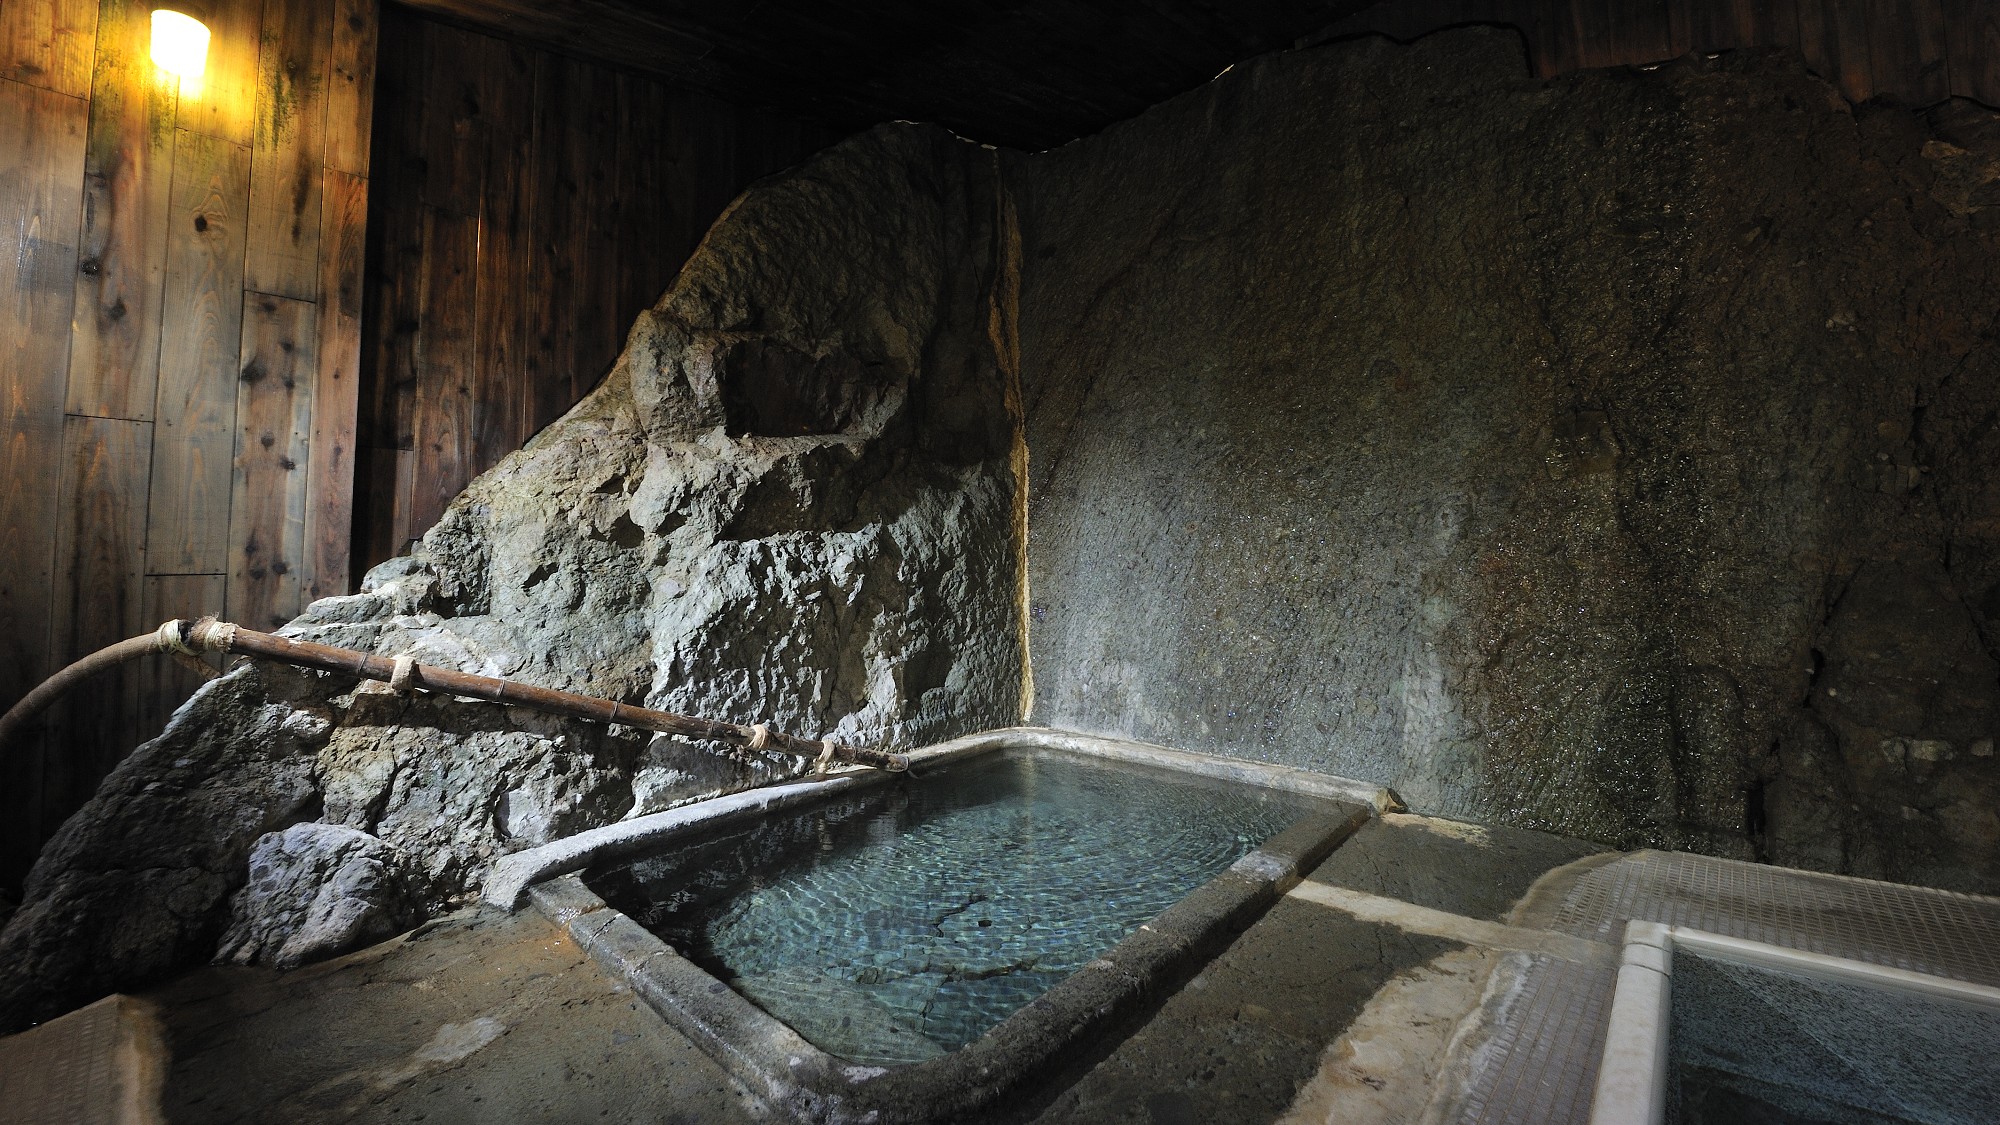 ＊千年の湯　岩風呂　天然の温泉自噴岩盤をそのまま生かしたもので、かつては歴代藩公の湯でありました。